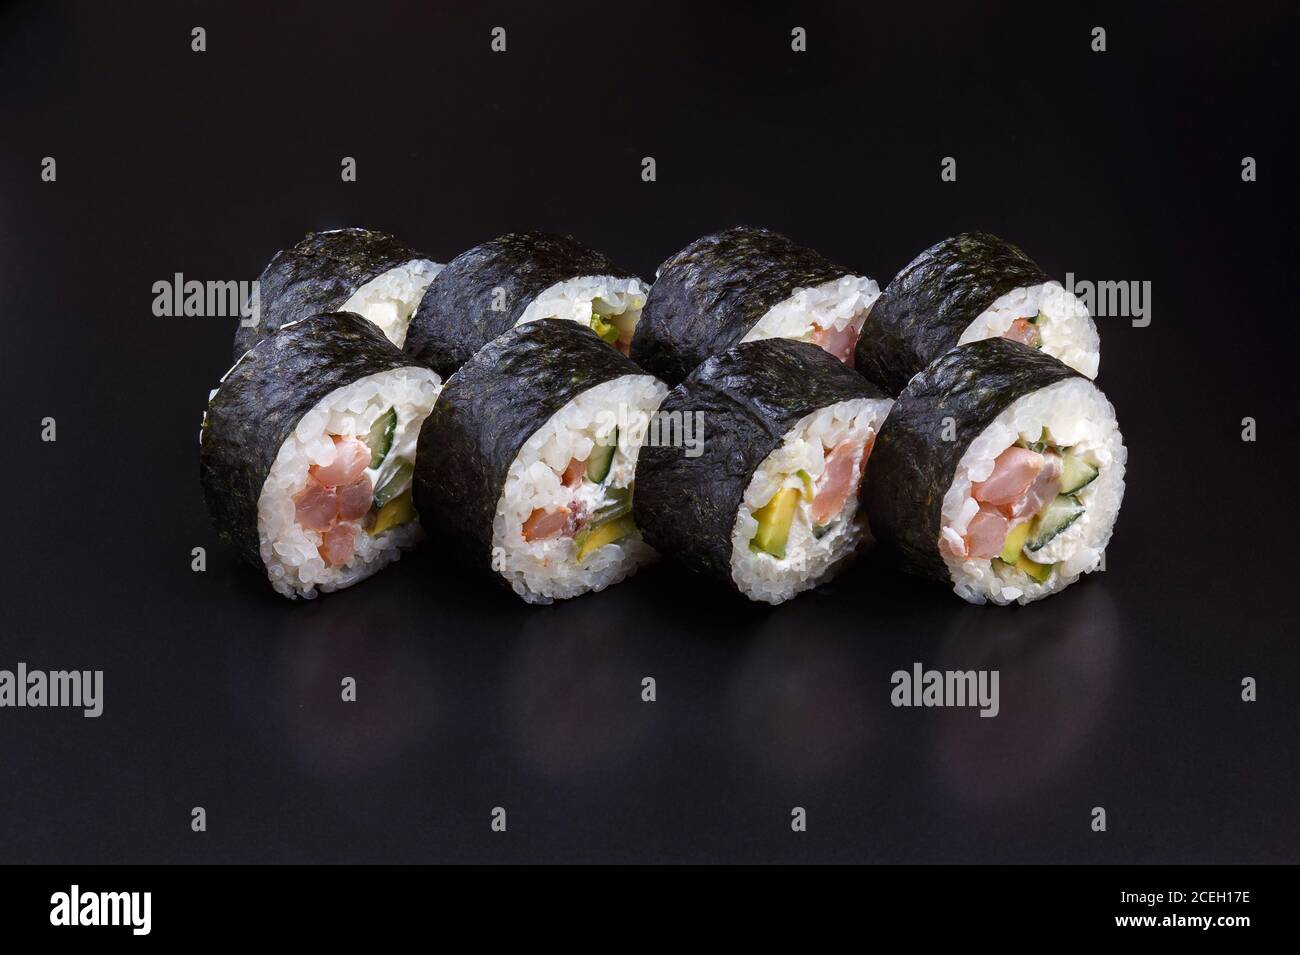 Tradizionale delizioso rotolo di sushi Shrimp Maki fresco su sfondo nero con riflessi. Rotolo di sushi con riso, formaggio cremoso, avocado, salmone. SHR Foto Stock